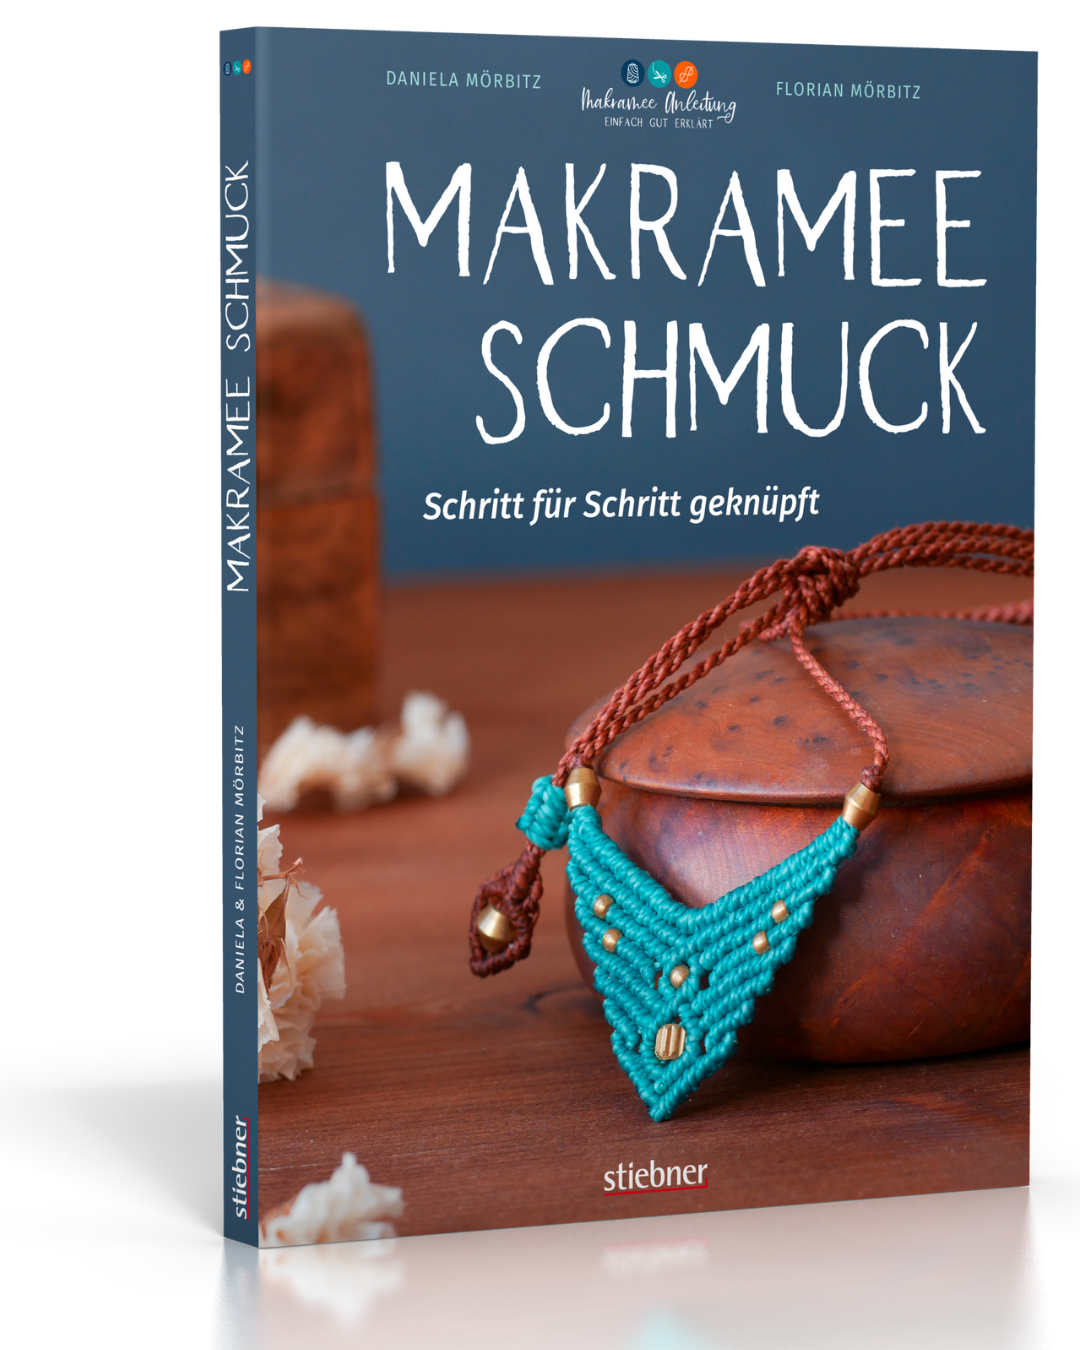 Das Makramee Buch mit allem Wissenswerten Märchenhaftes Makramee Anleitungen zu zahlreichen Knotenarten & faszinierenden Makramee Projekten zum Selberknüpfen kostenlose Online-Hilfe bei Fragen 